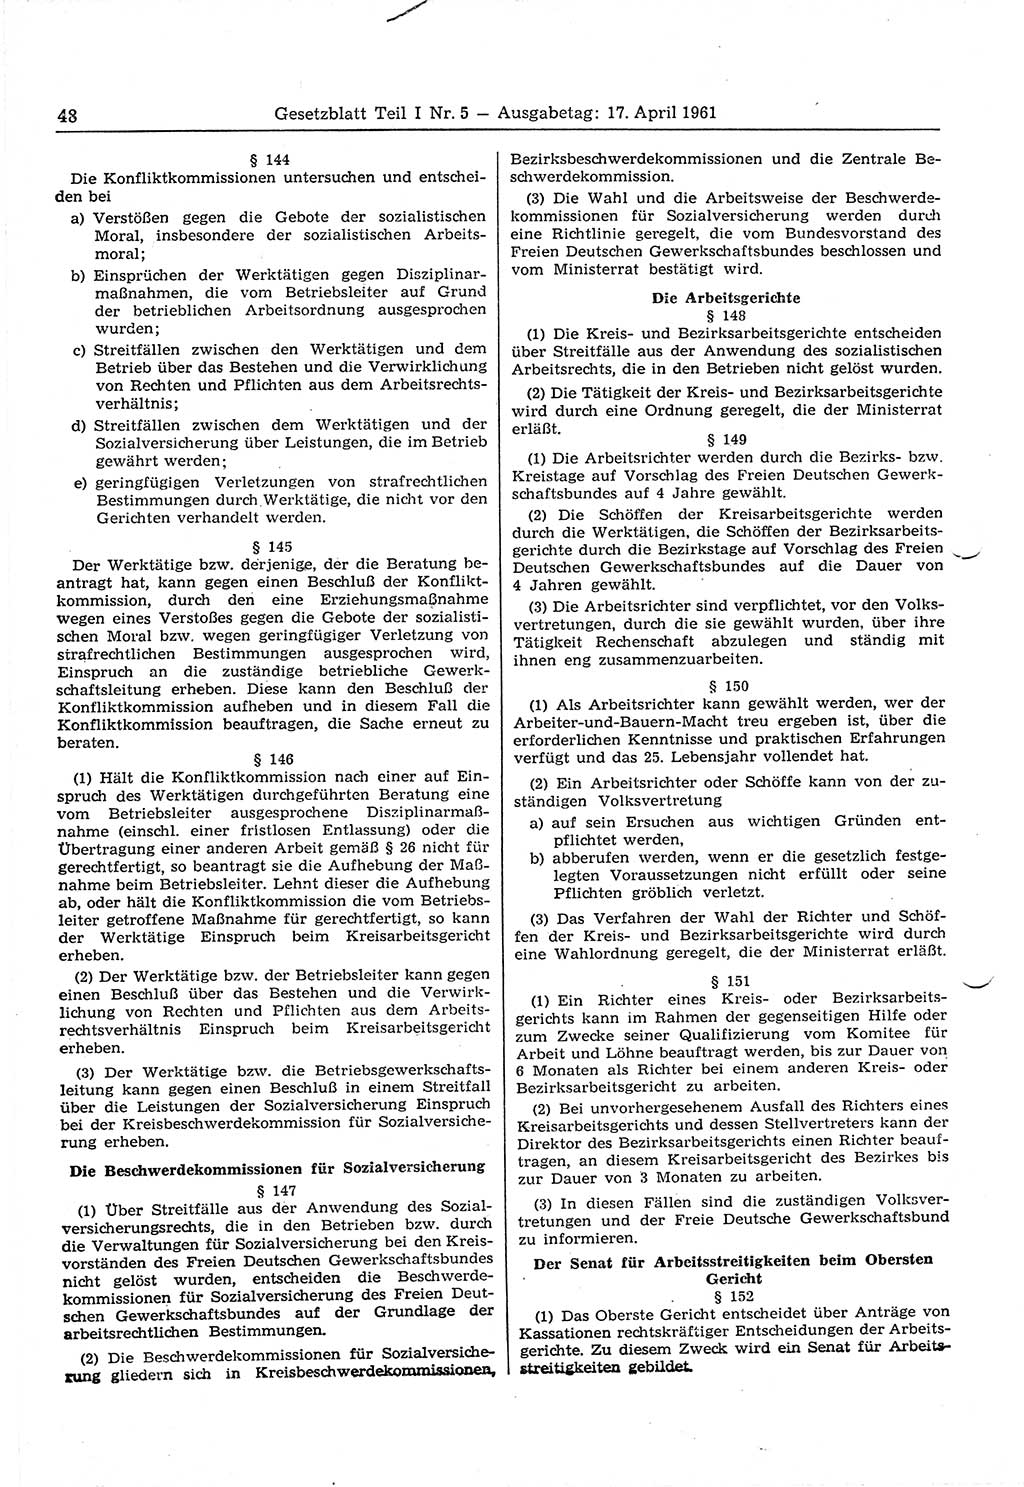 Gesetzblatt (GBl.) der Deutschen Demokratischen Republik (DDR) Teil Ⅰ 1961, Seite 48 (GBl. DDR Ⅰ 1961, S. 48)